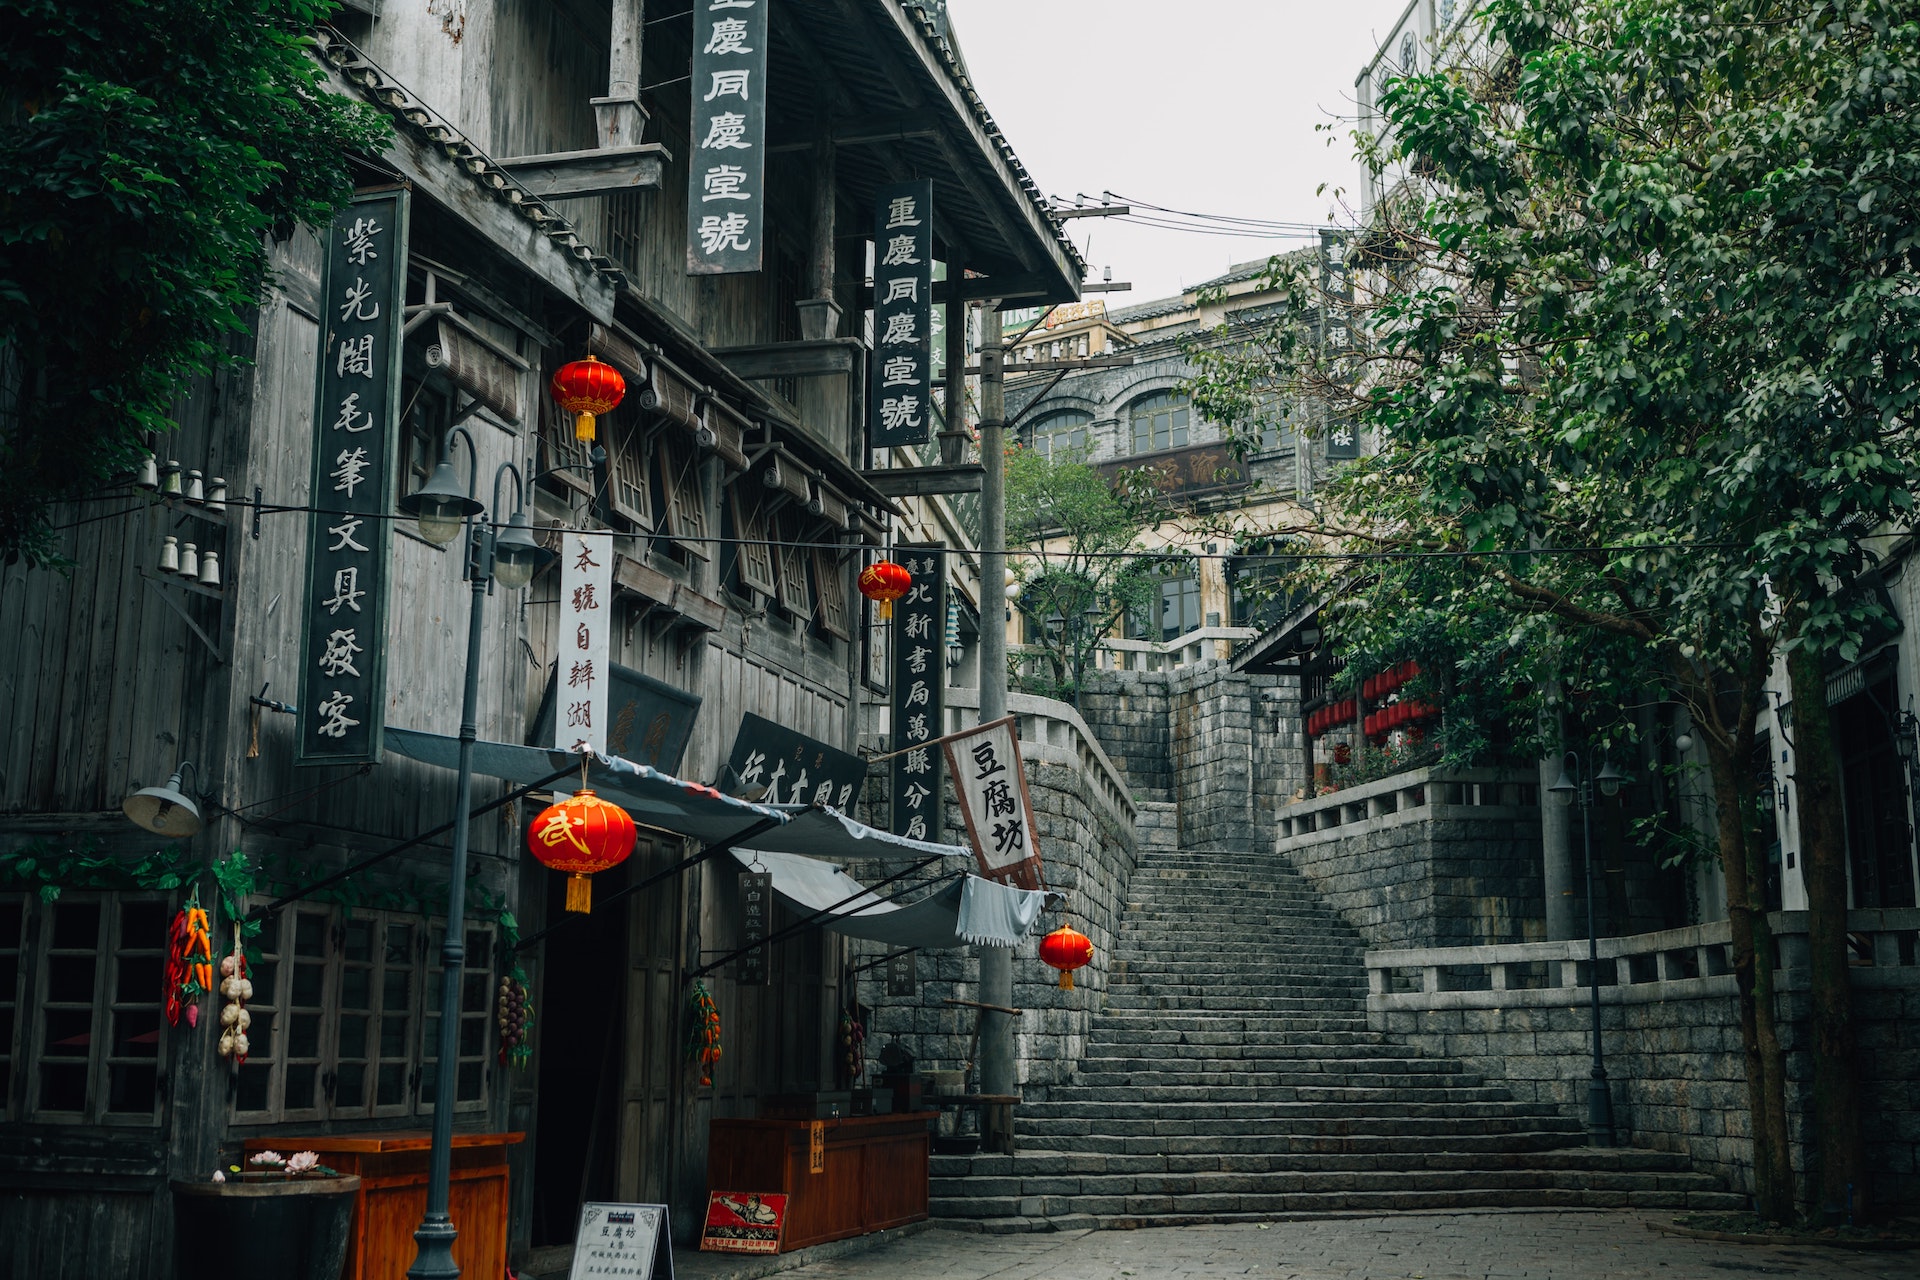 中國著名傳統老街和正體中文招牌